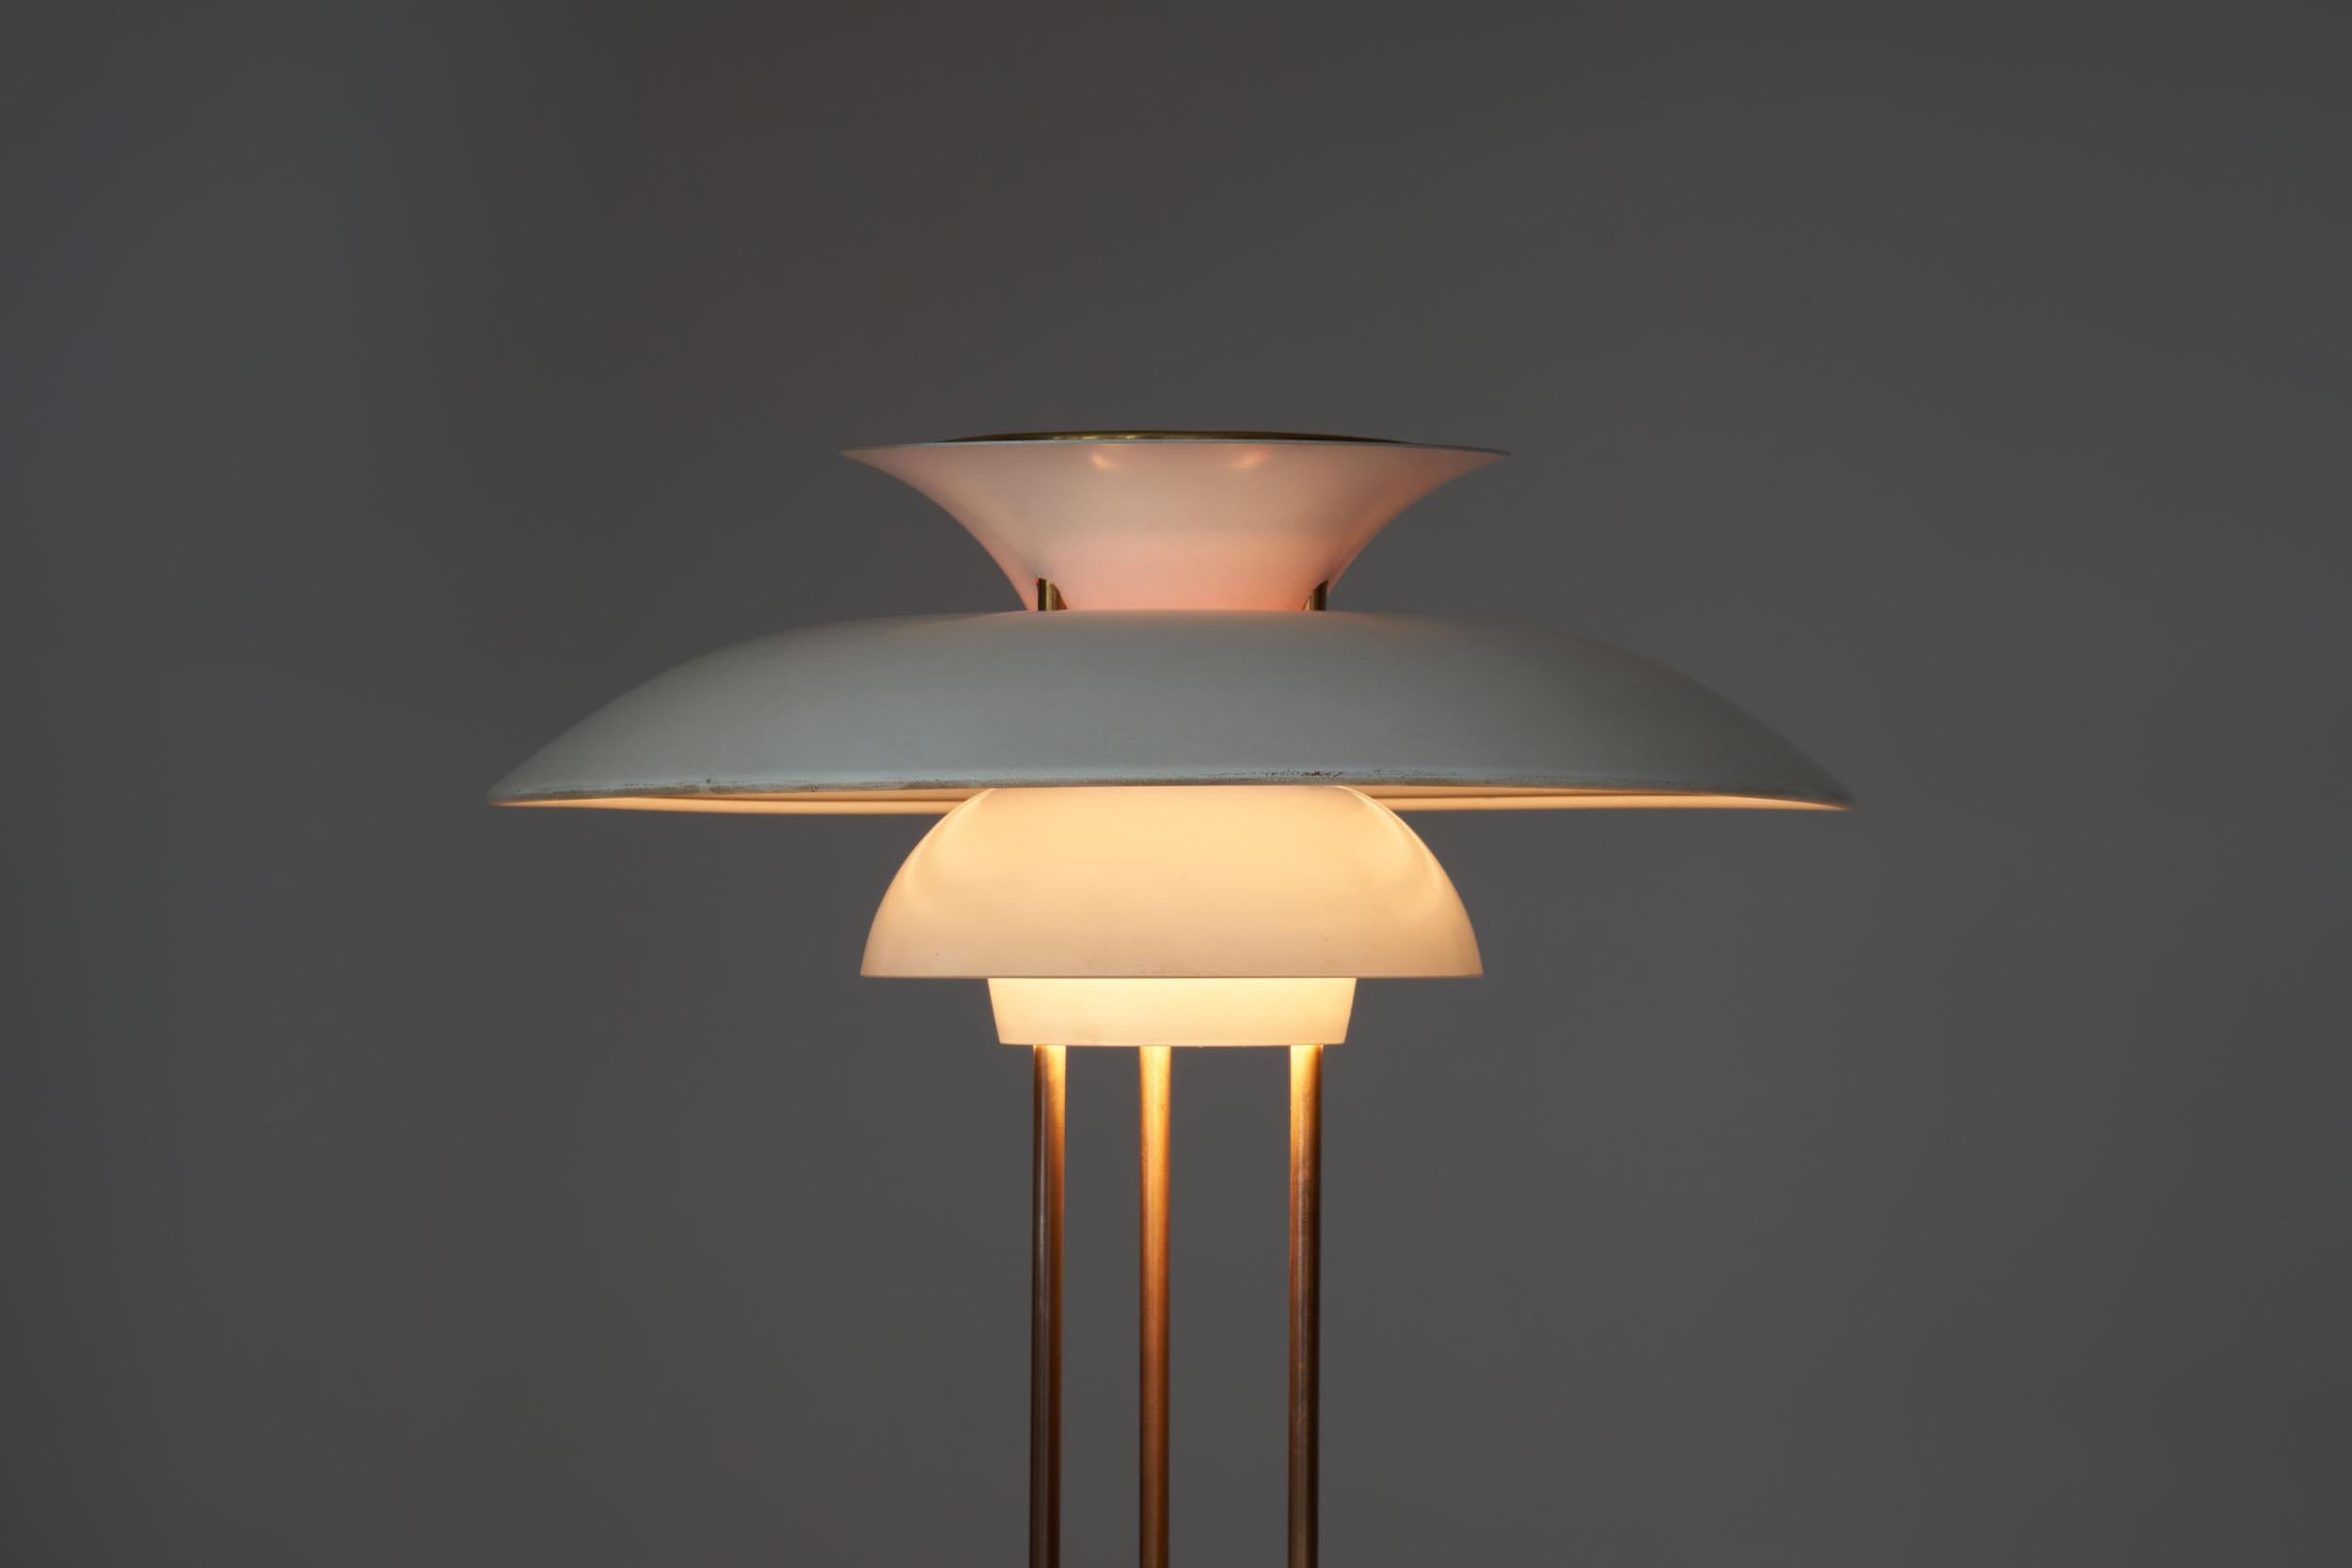 Aluminum Poul Henningsen “PH-5” Table Lamp for Louis Poulsen, Denmark, 1958